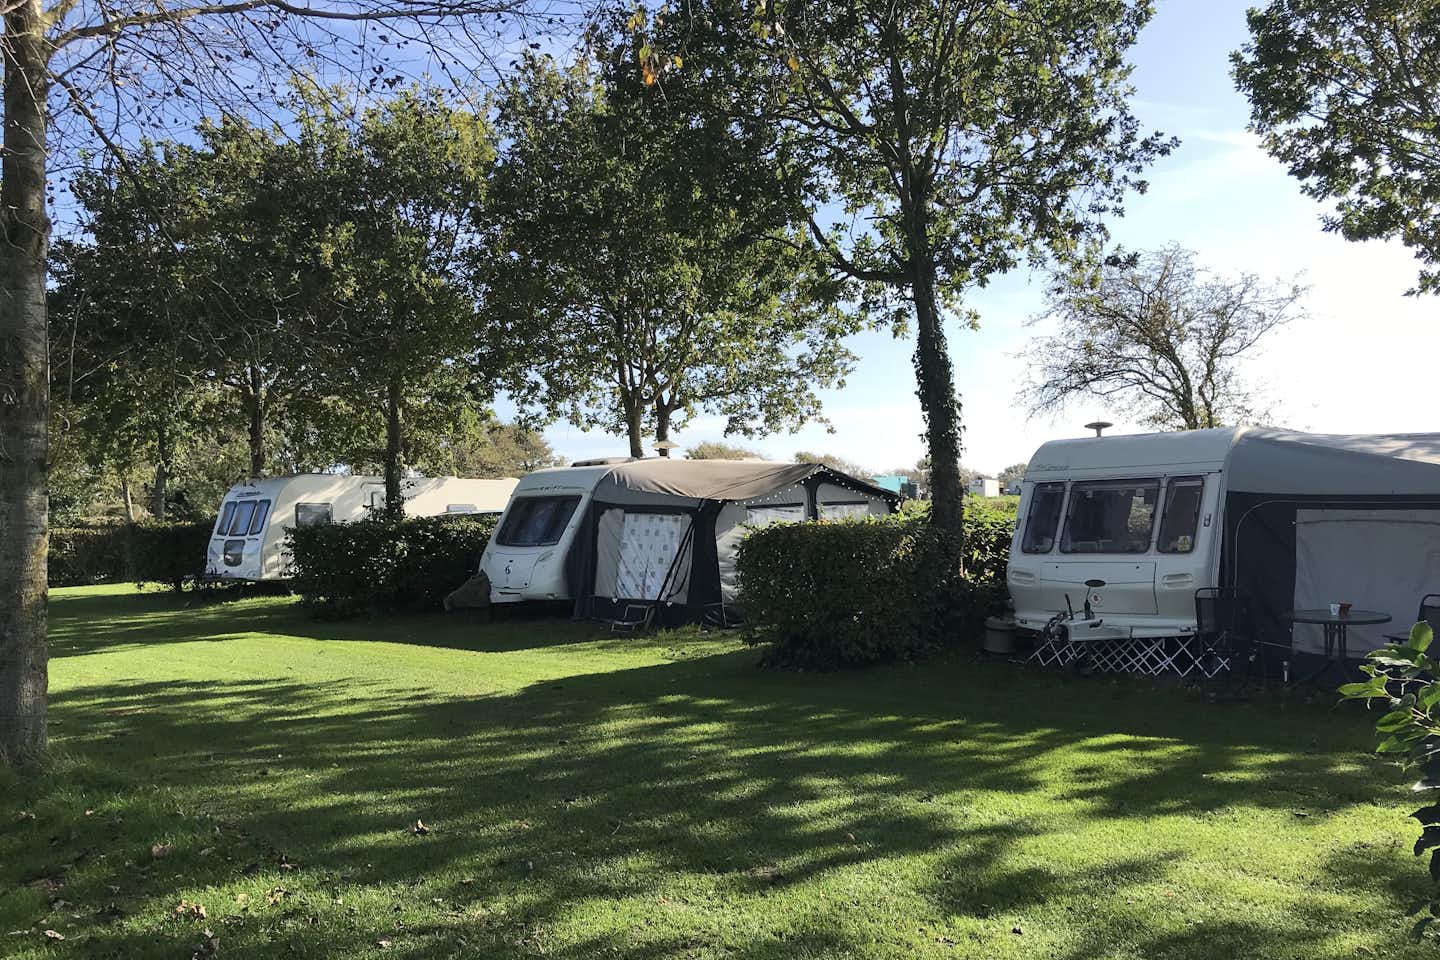 Acorn Camping and Caravan Site - Standplätze durch Hecken und Bäume voneinander getrennt mit Wohnwagen auf einer grünen Wiese